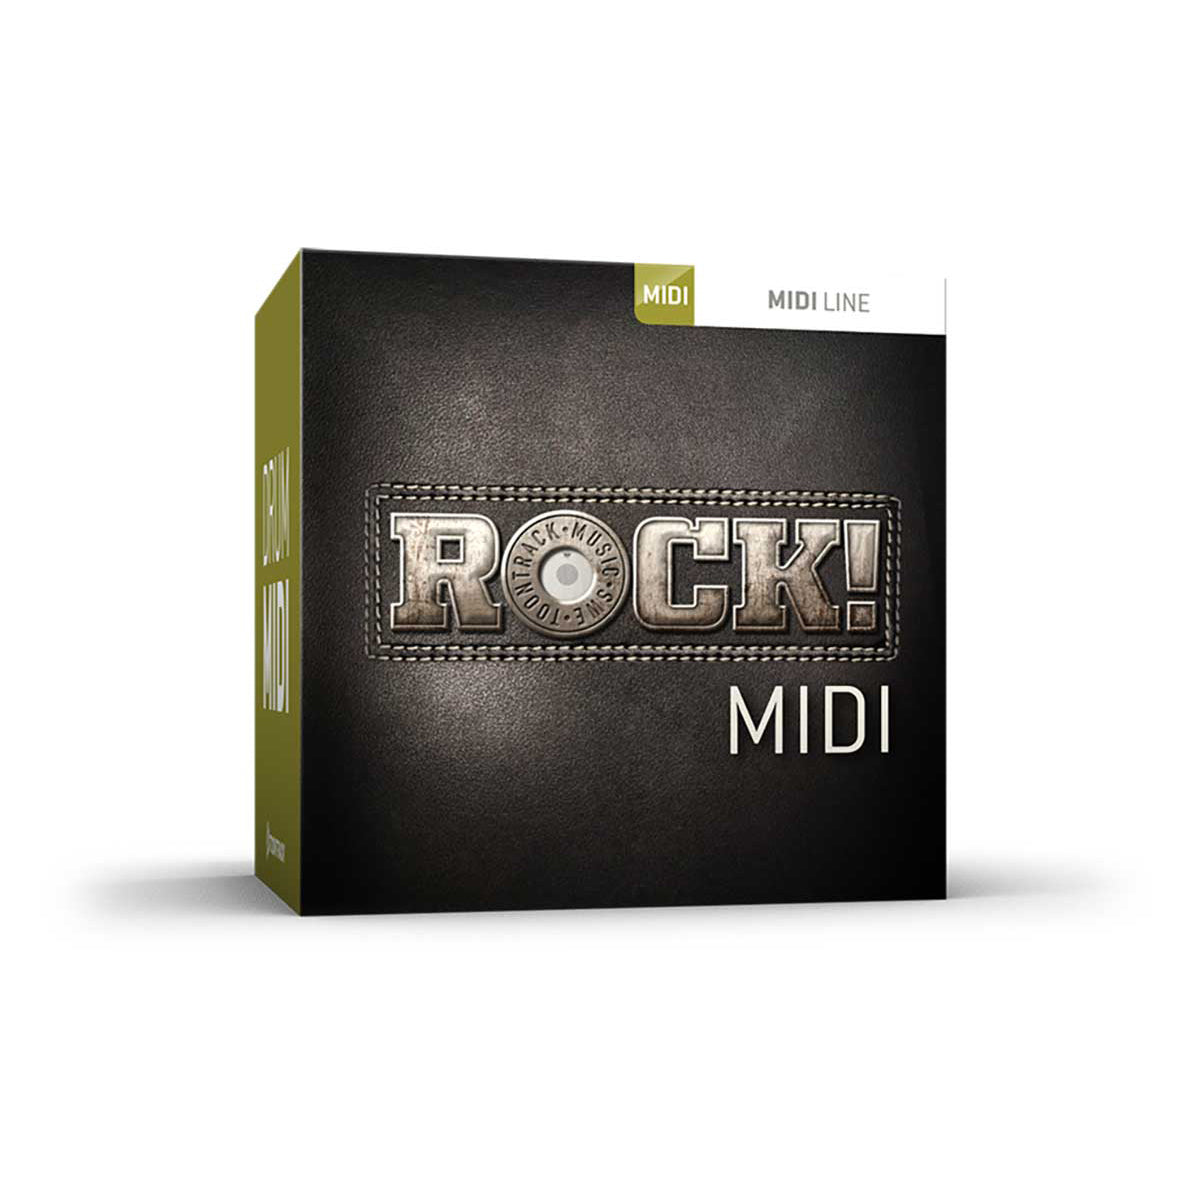 Toontrack Rock MIDI